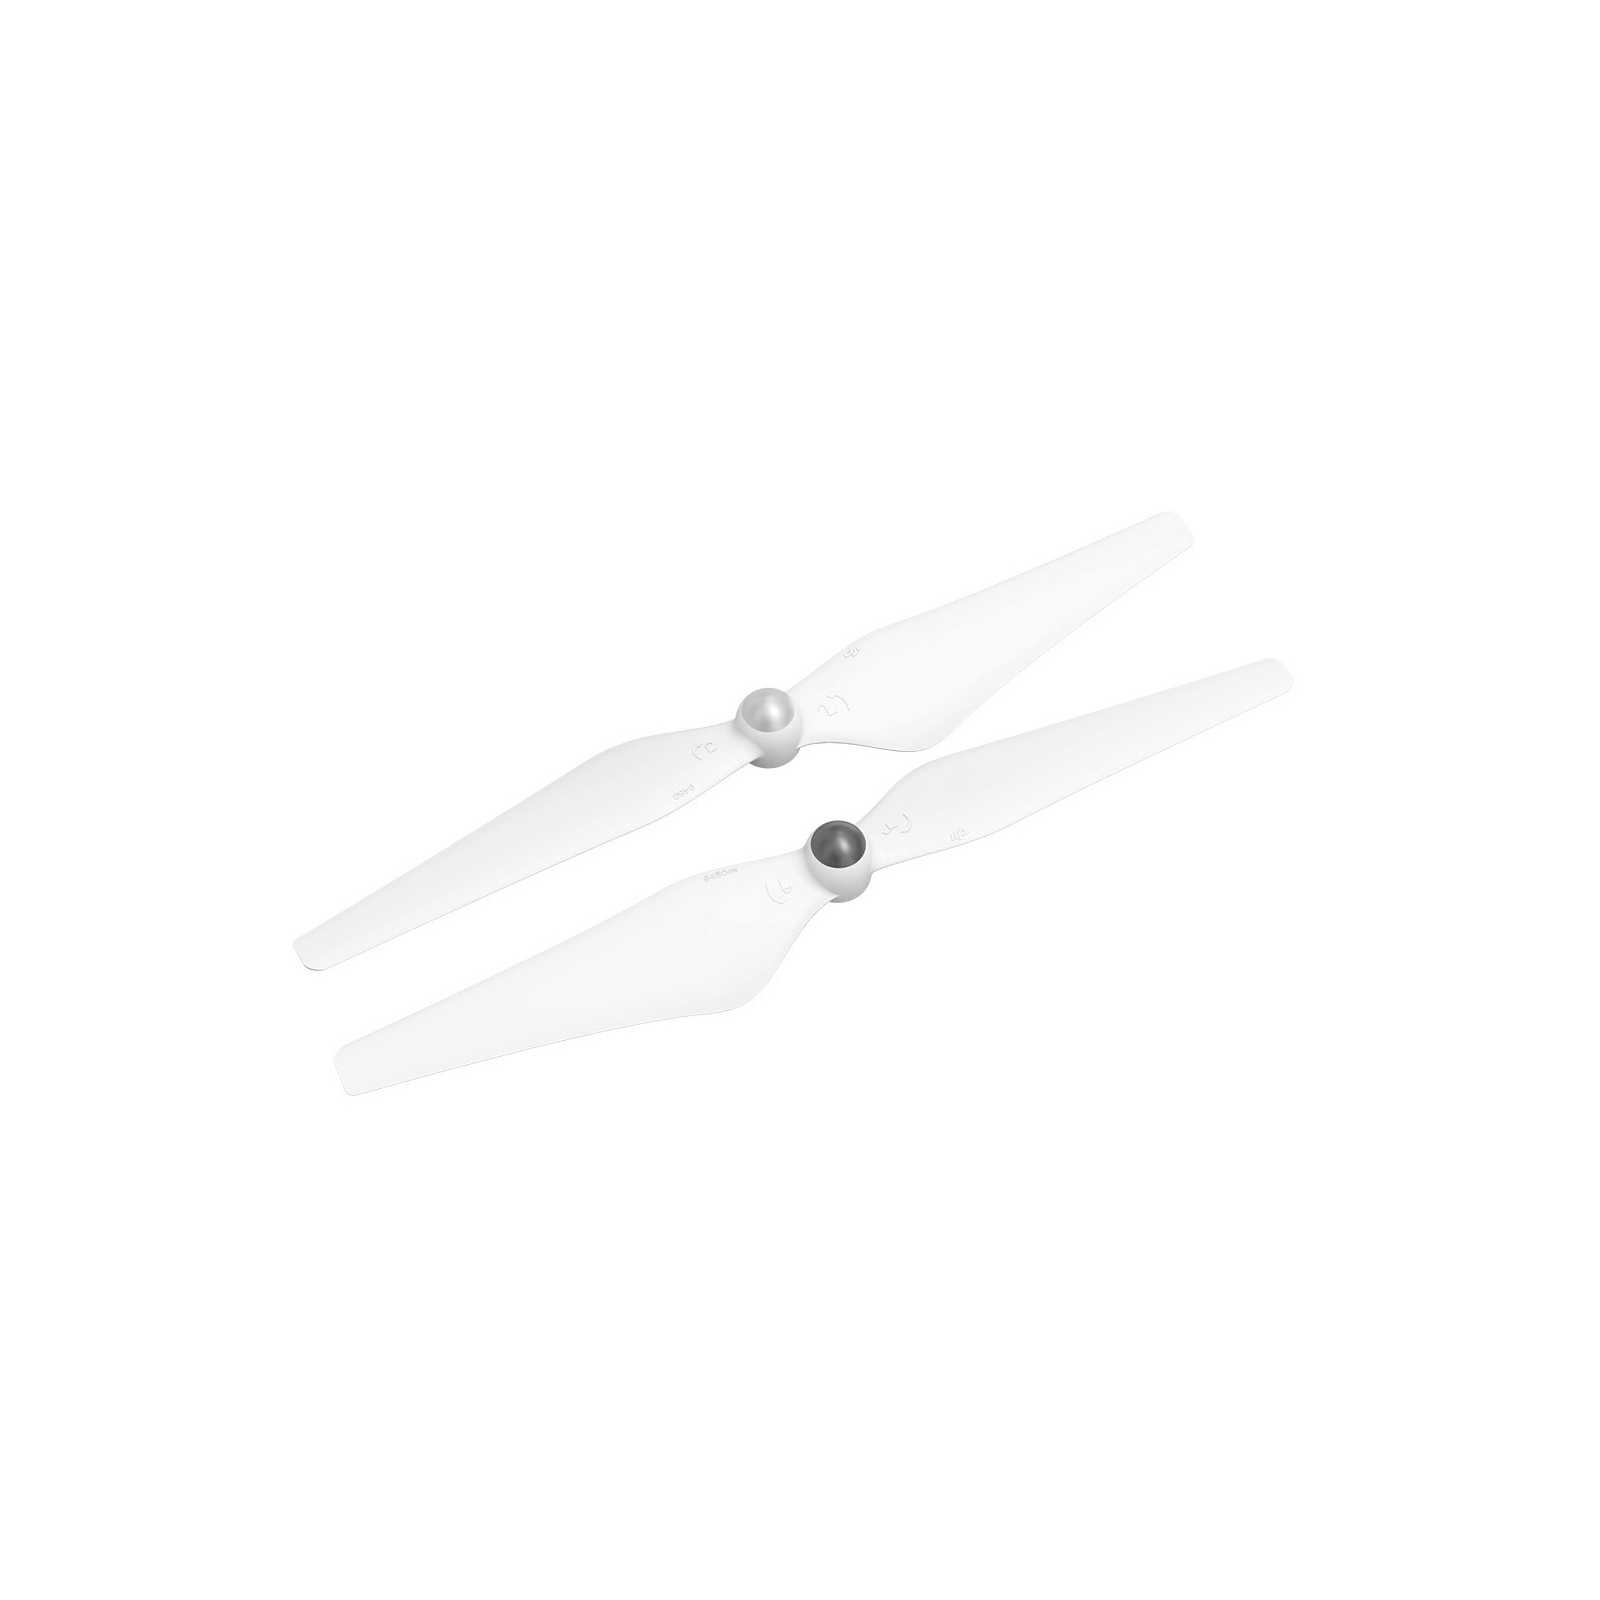 Пропелер для дрона DJI 9450 (CP.PT.000195)